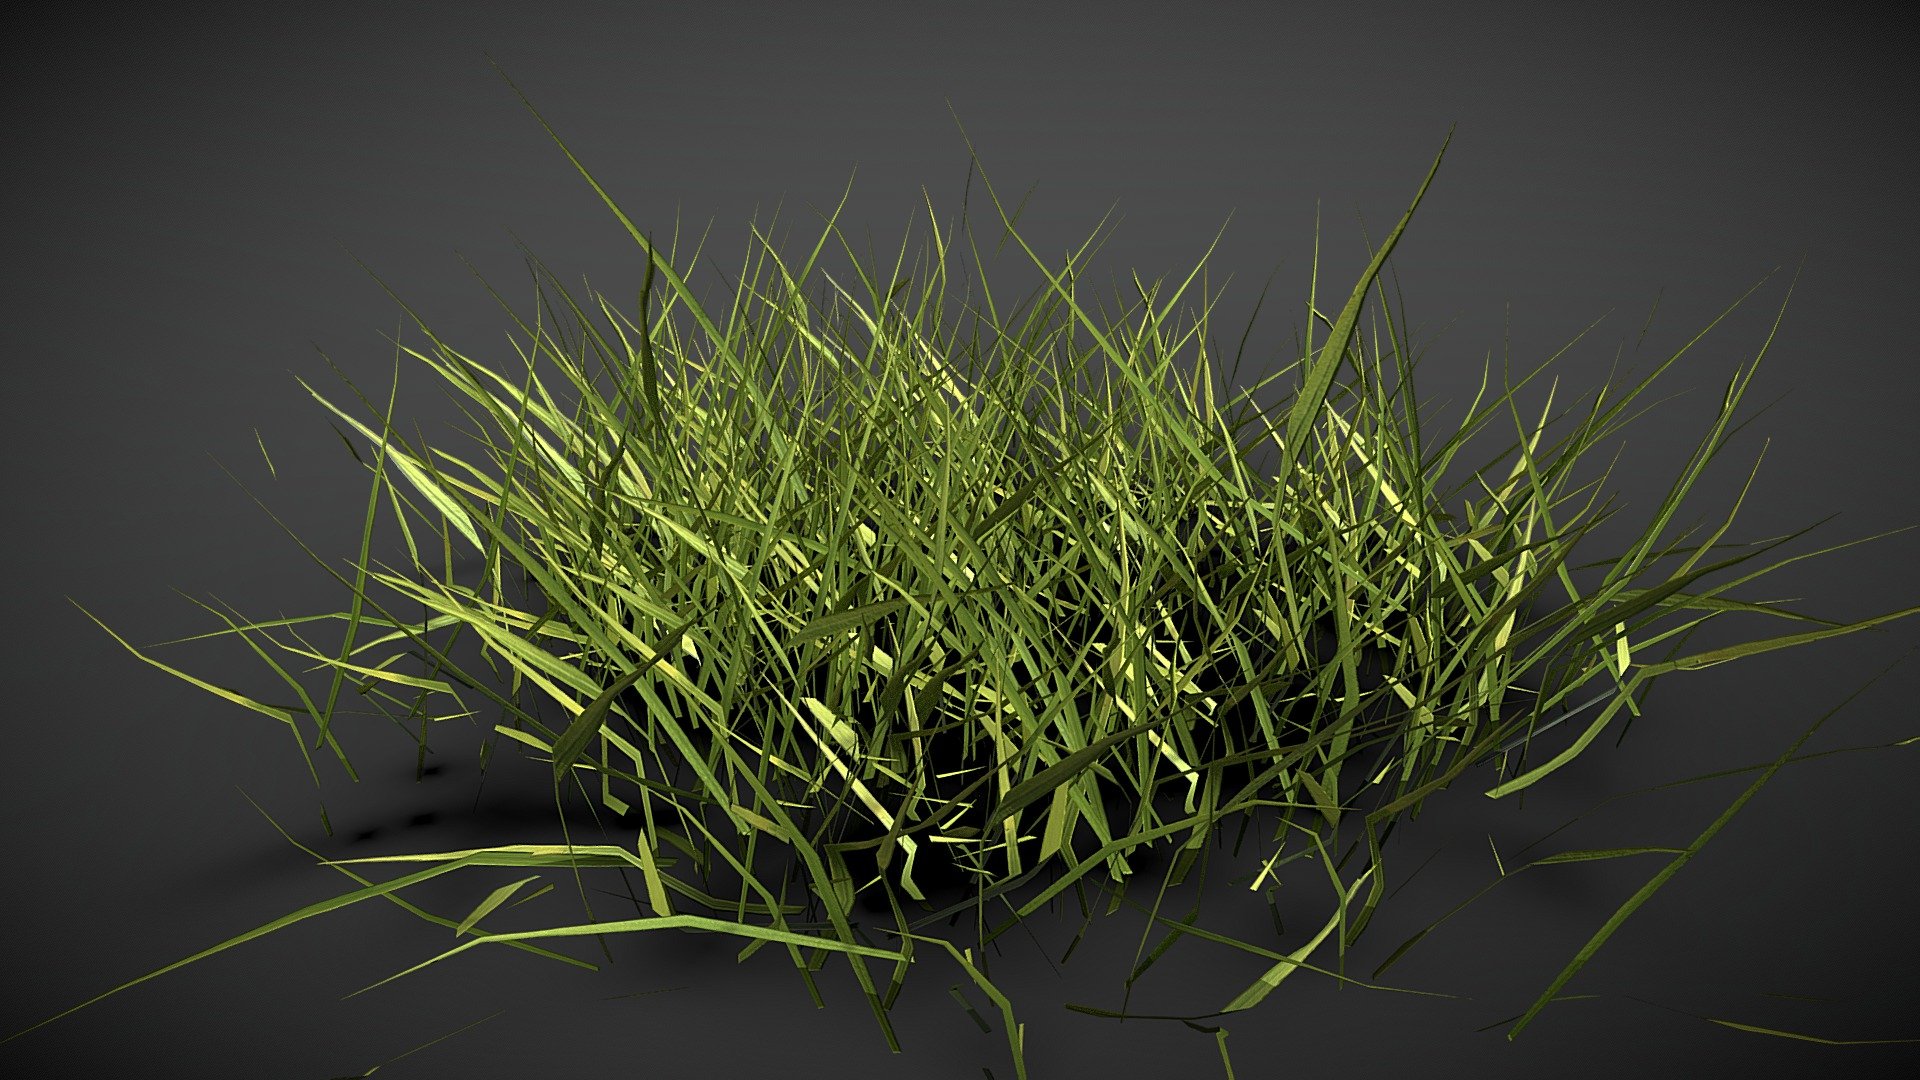 Realistics grass
free realistics grass scan
low poly grass 3d modal
high poly grass 3d modal
this modal is free
prisma 3d grass scsn modal - Realistics grass 03 - Download Free 3D model by Digital screen official (@ck212575) 3d model